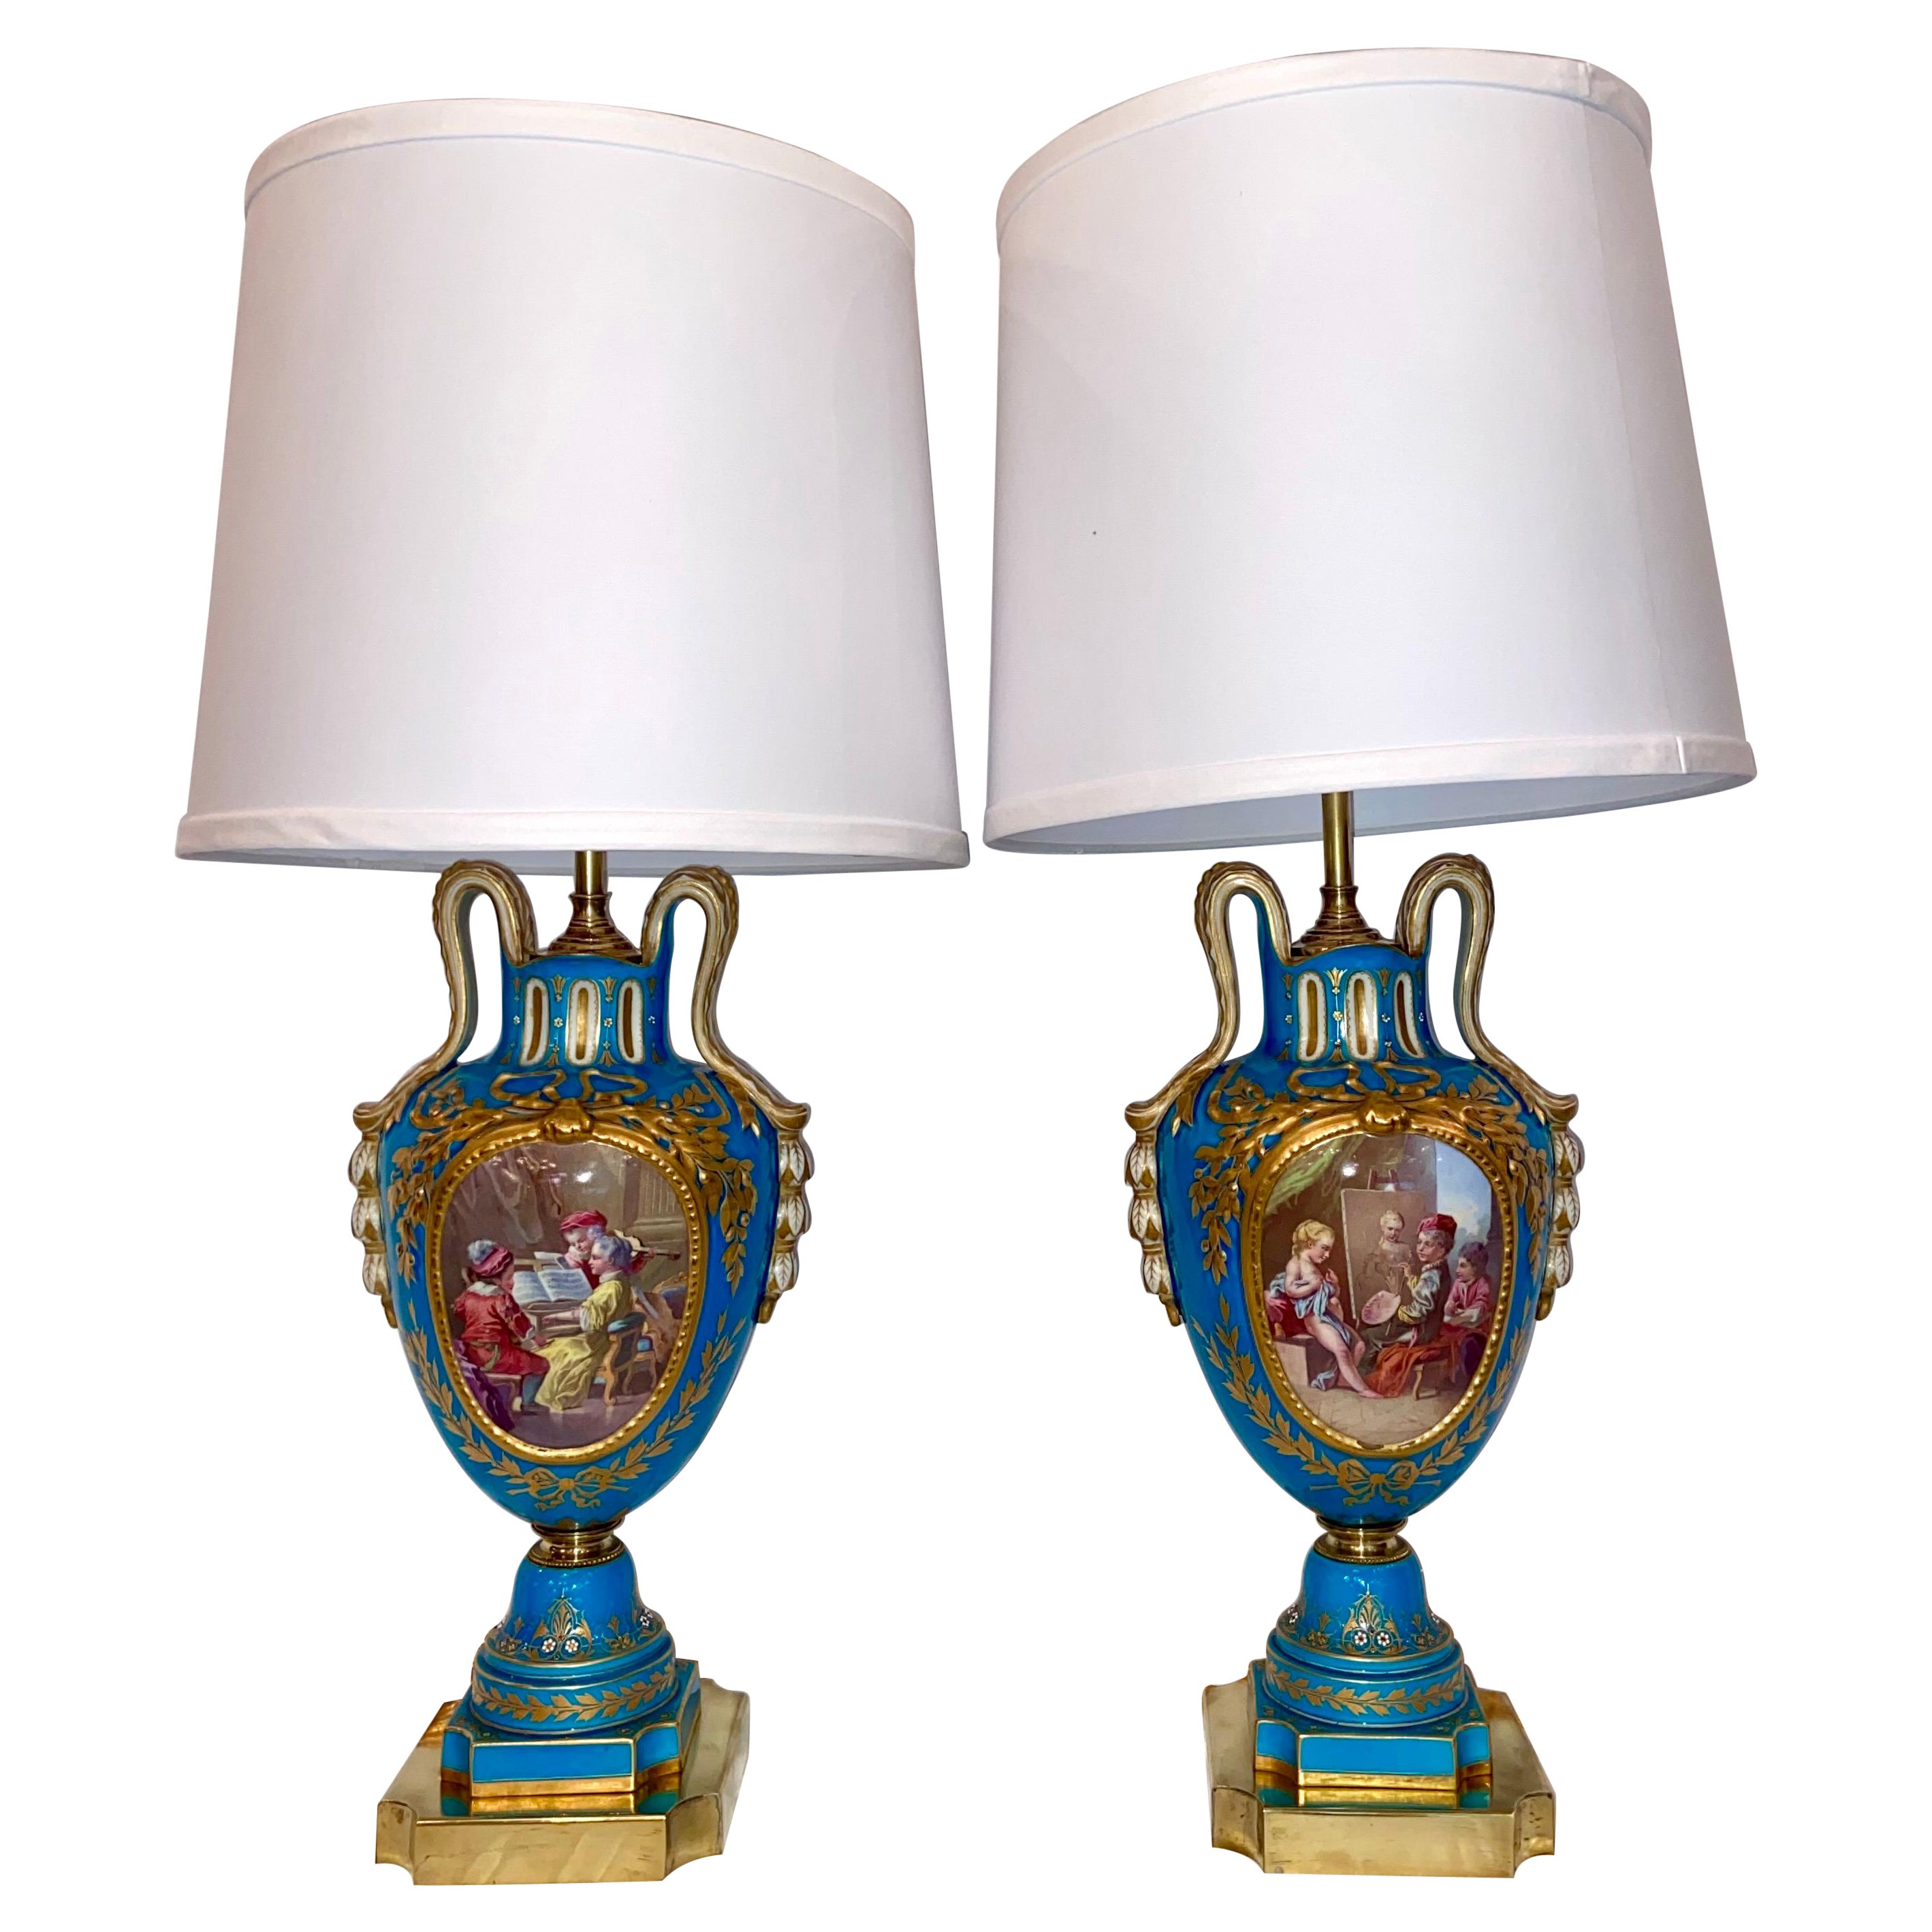 Pair Antique French Cyan Blue and Gold "Vieux Paris" Porcelain Lamps, Circa 1880